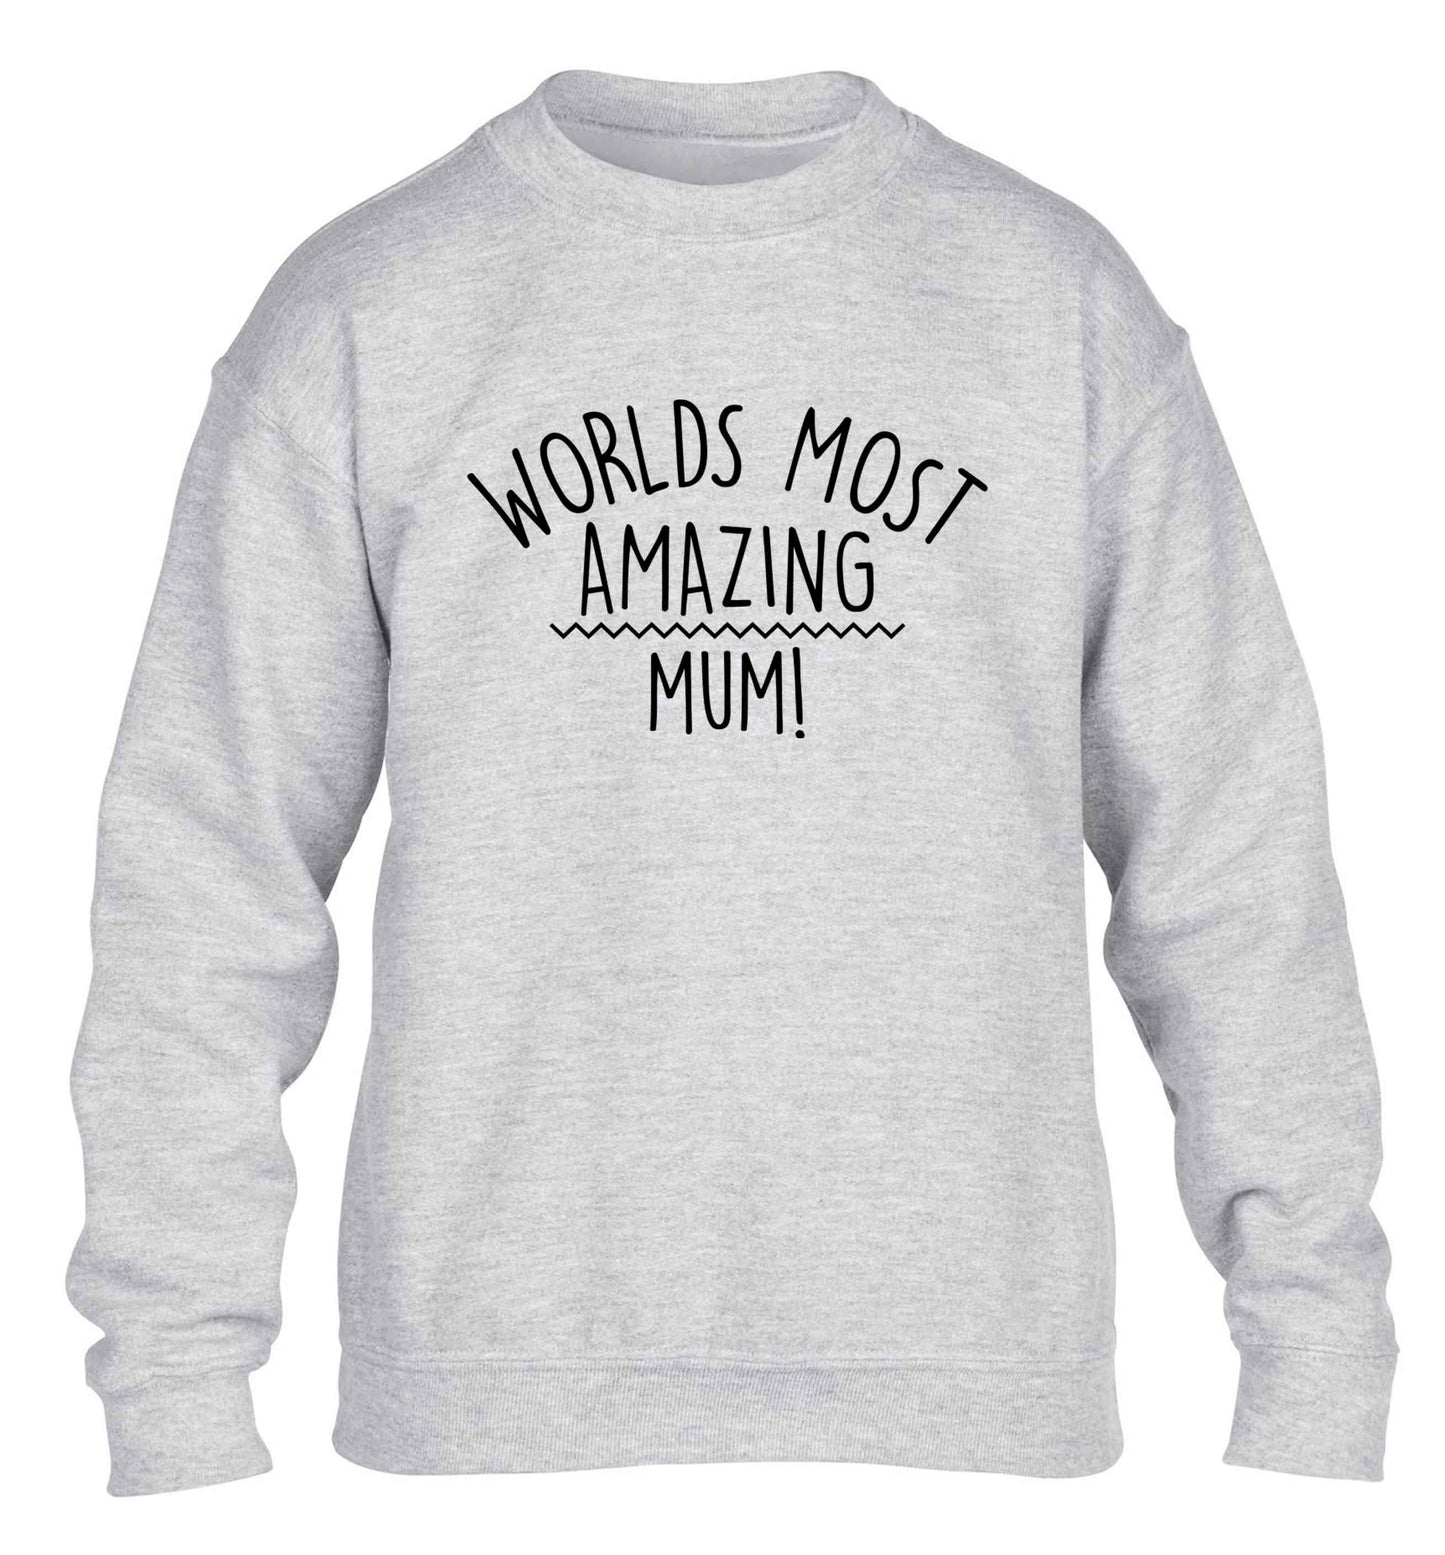 Worlds most amazing mum children's grey sweater 12-13 Years